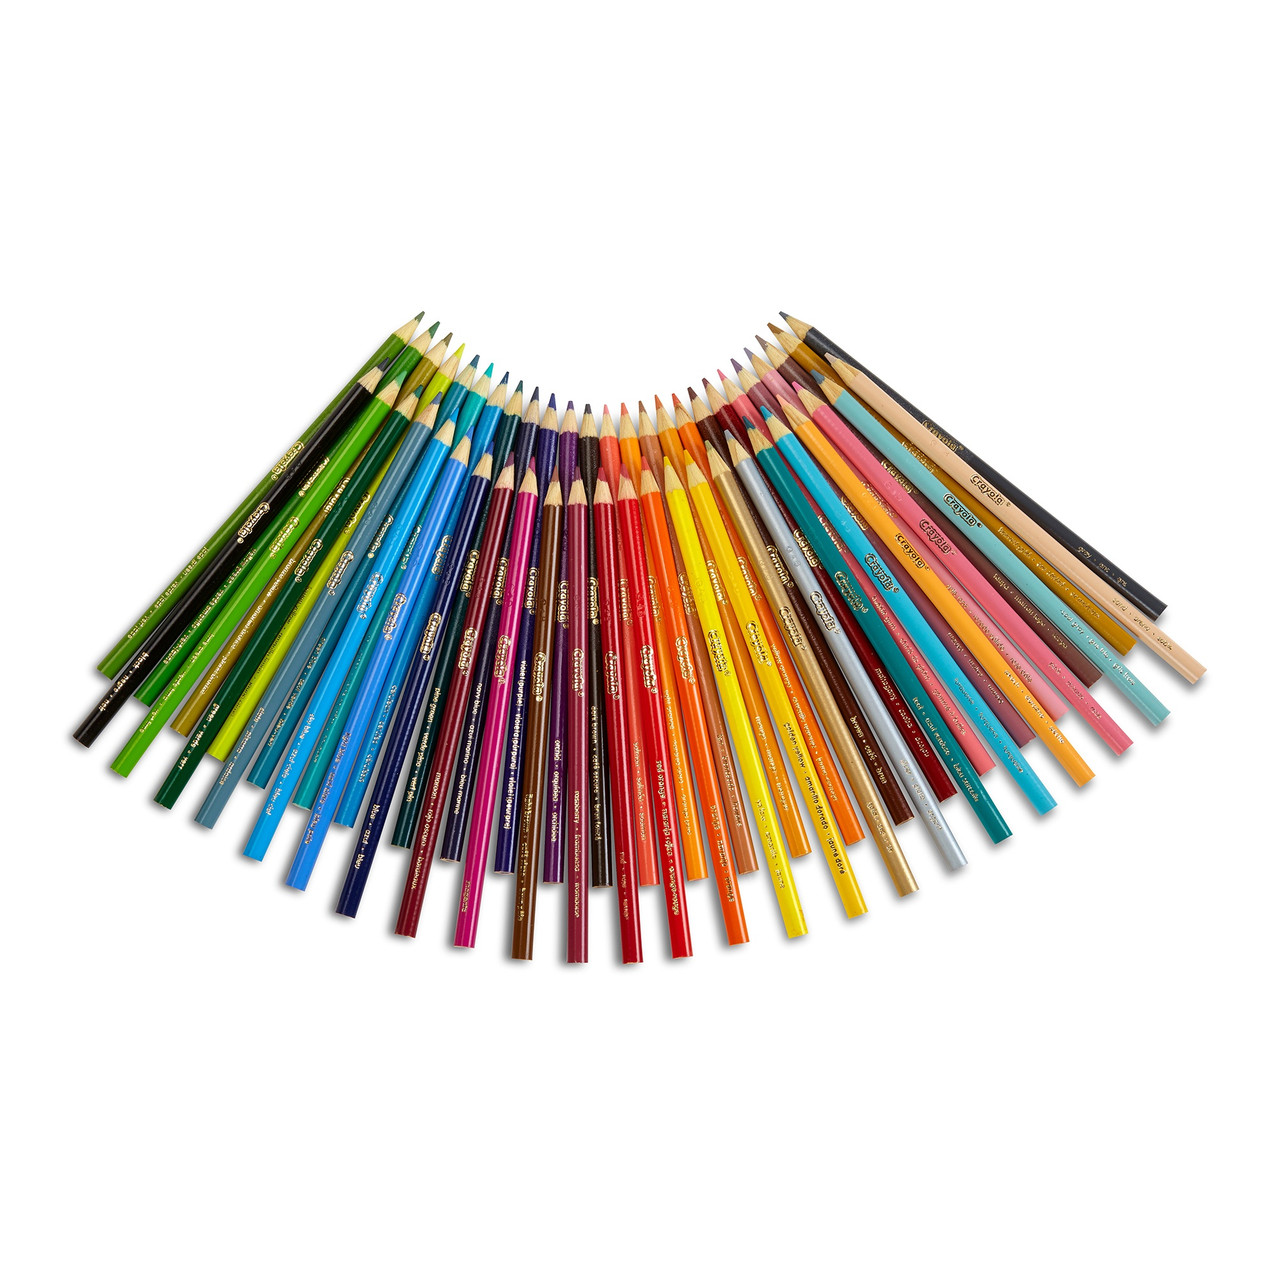 Crayola Twistables Colored Pencils-12/Pkg Long 68-7408 - GettyCrafts